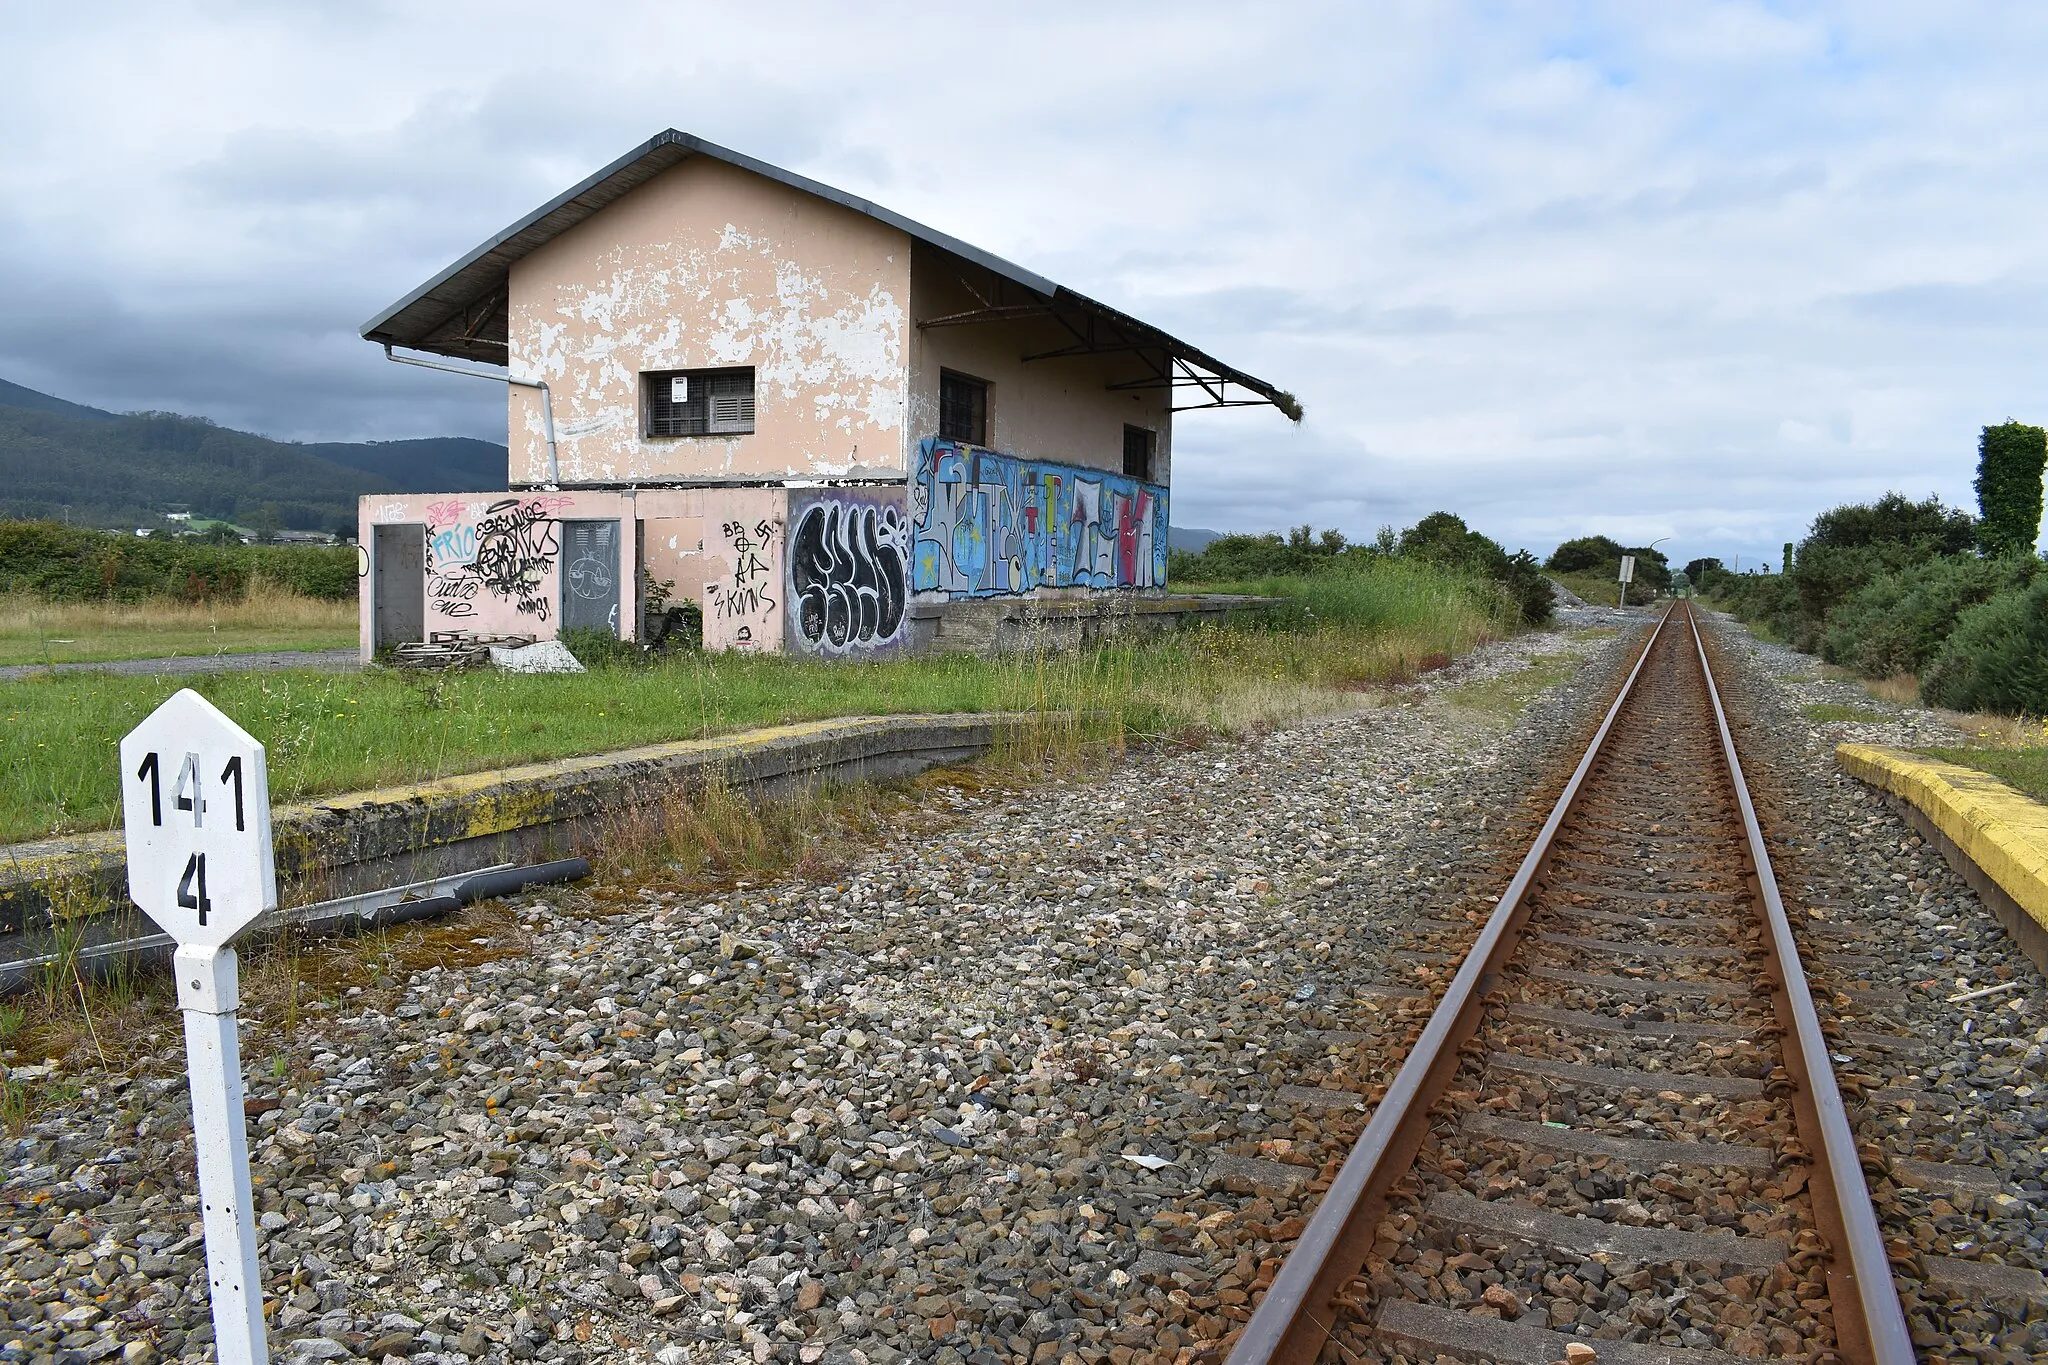 Photo showing: Estación de ferrocarril de Rinlo